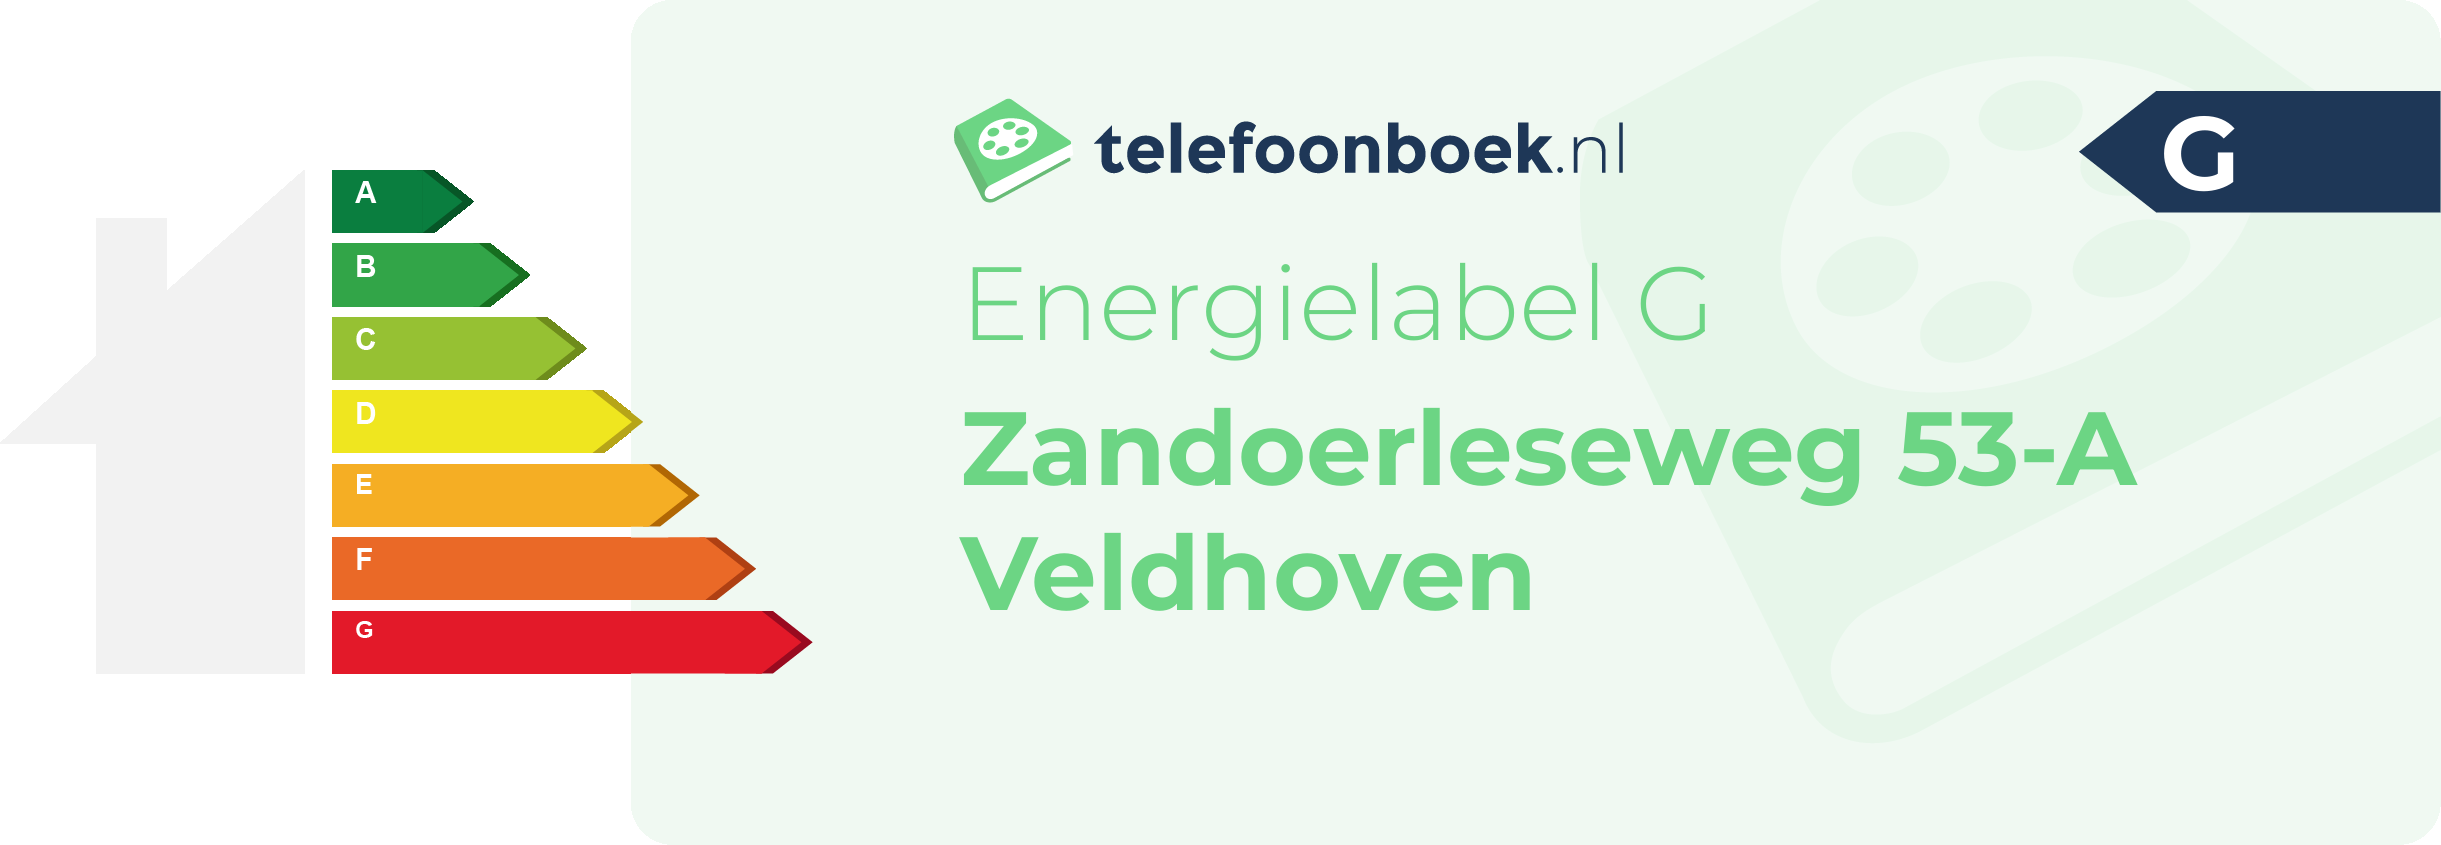 Energielabel Zandoerleseweg 53-A Veldhoven